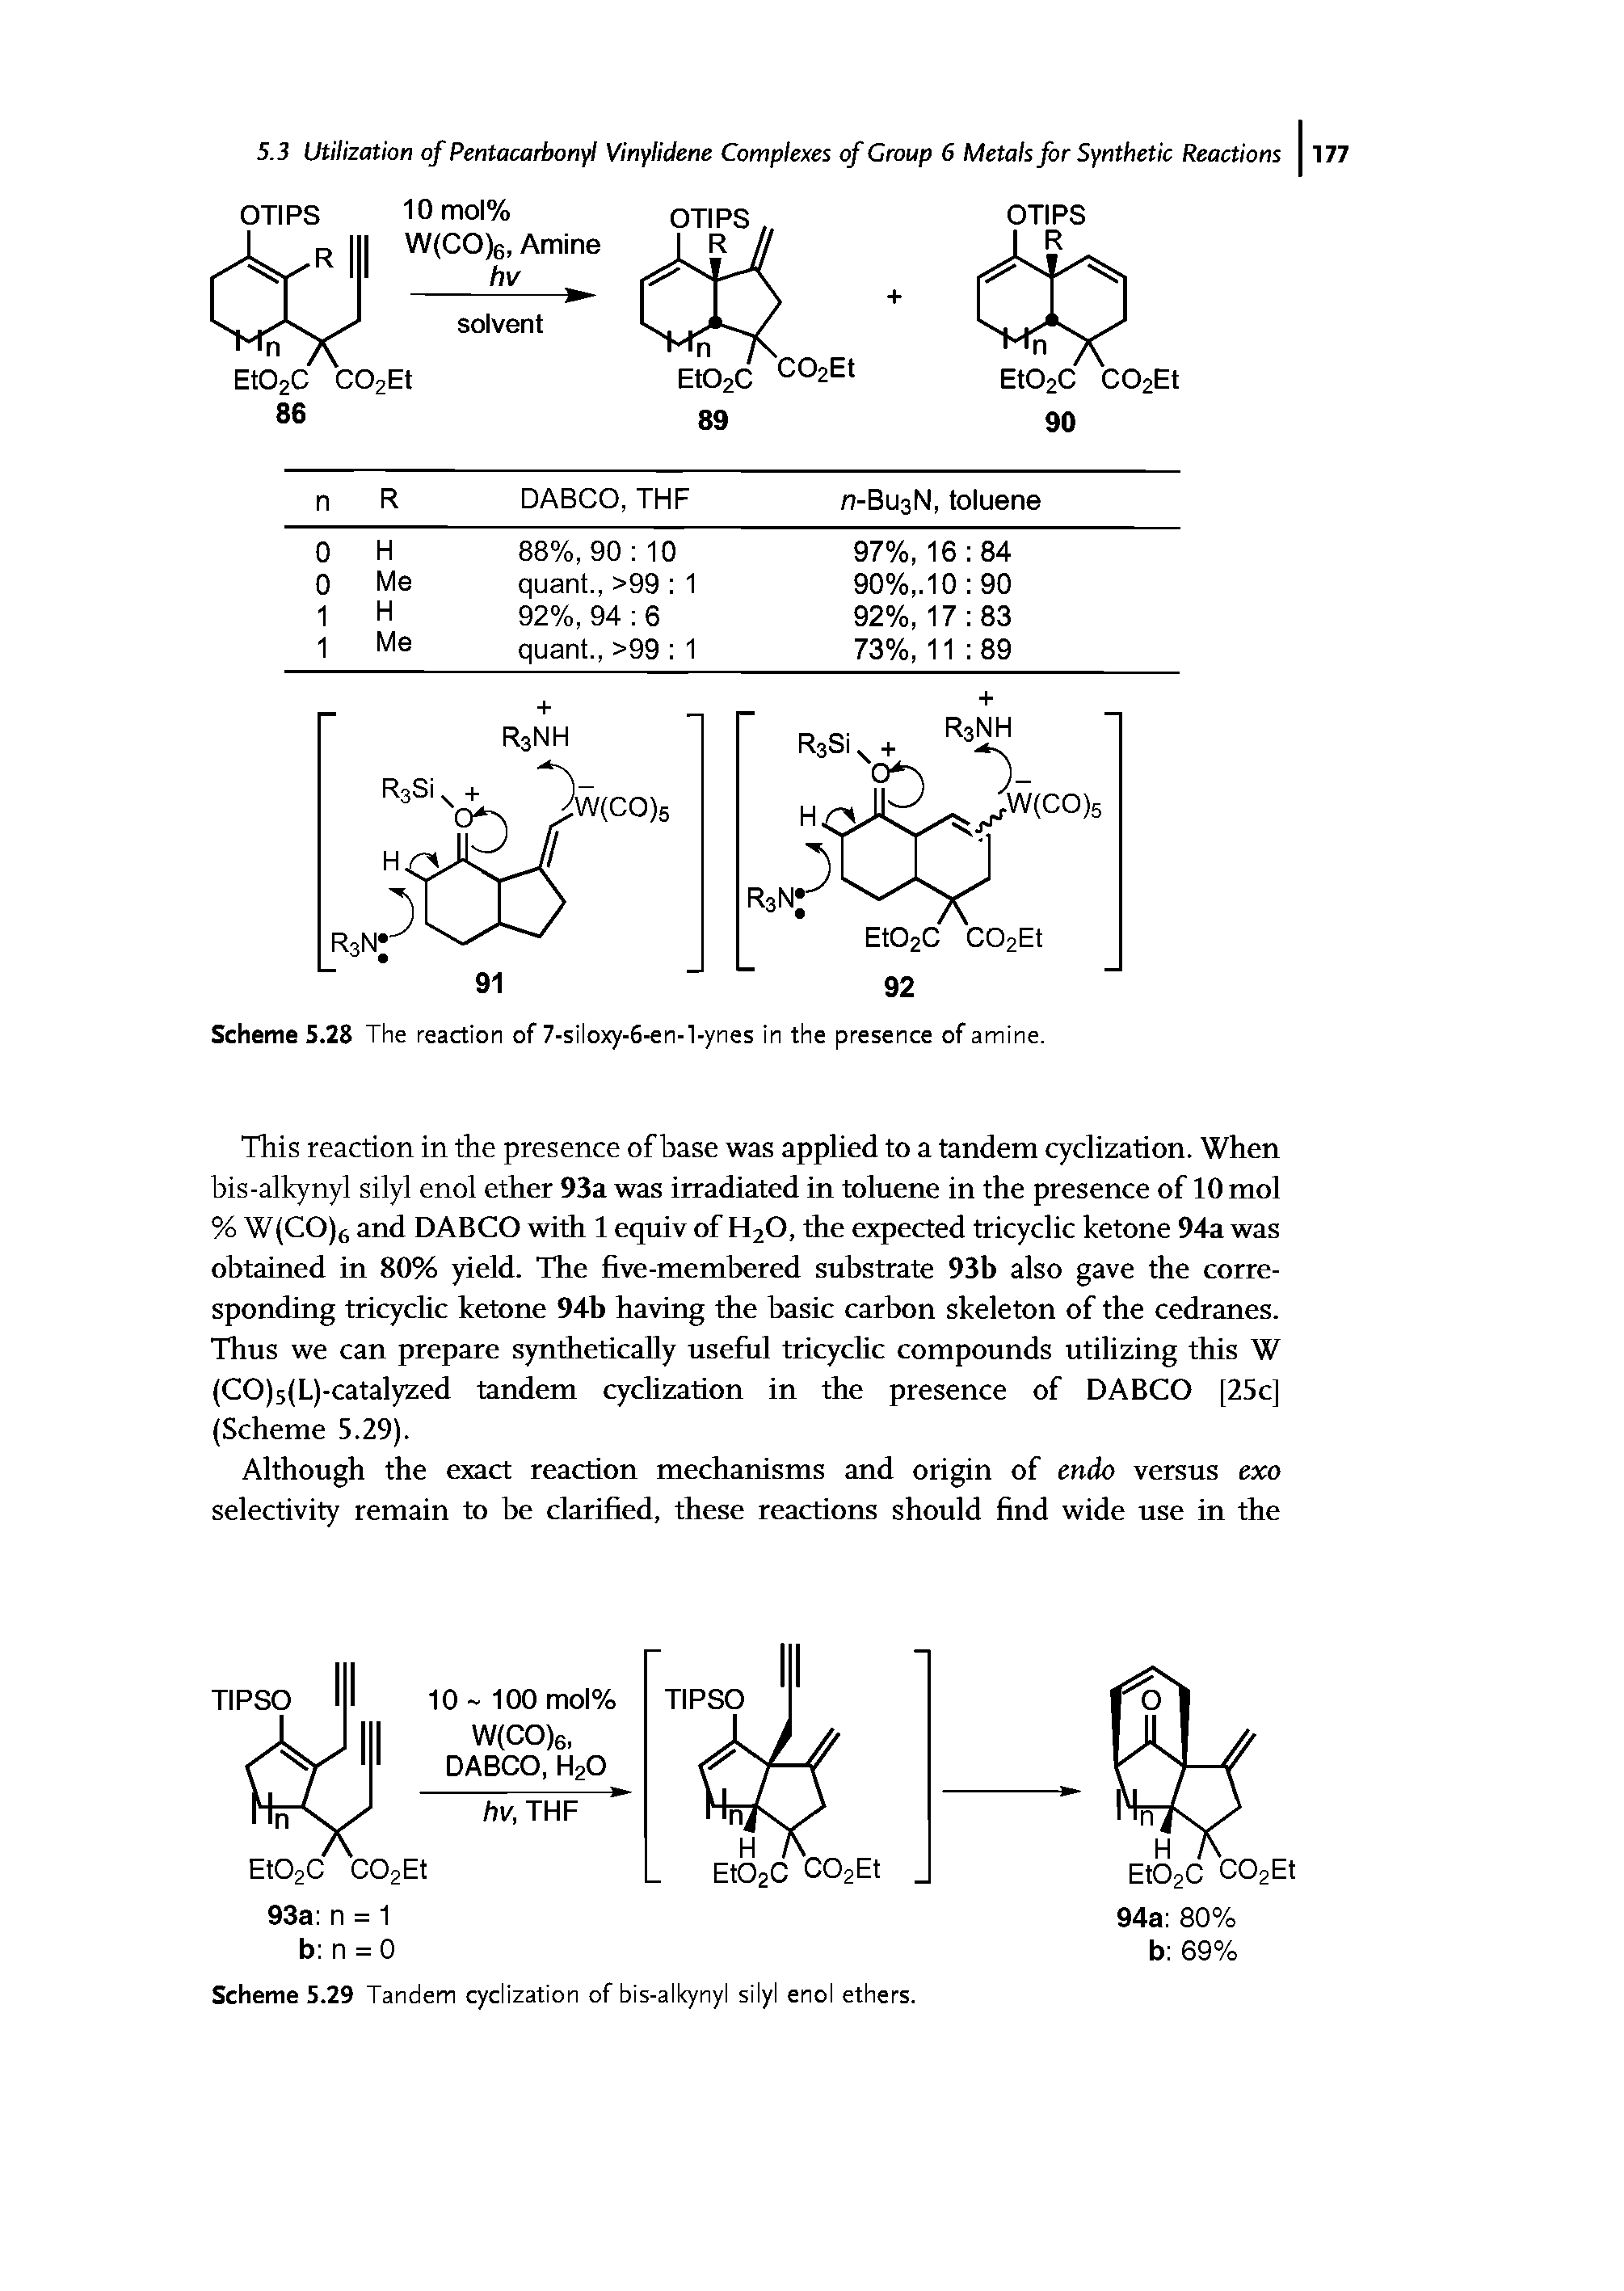 Scheme 5.29 Tandem cyclization of bis-alkynyl silyl enol ethers.